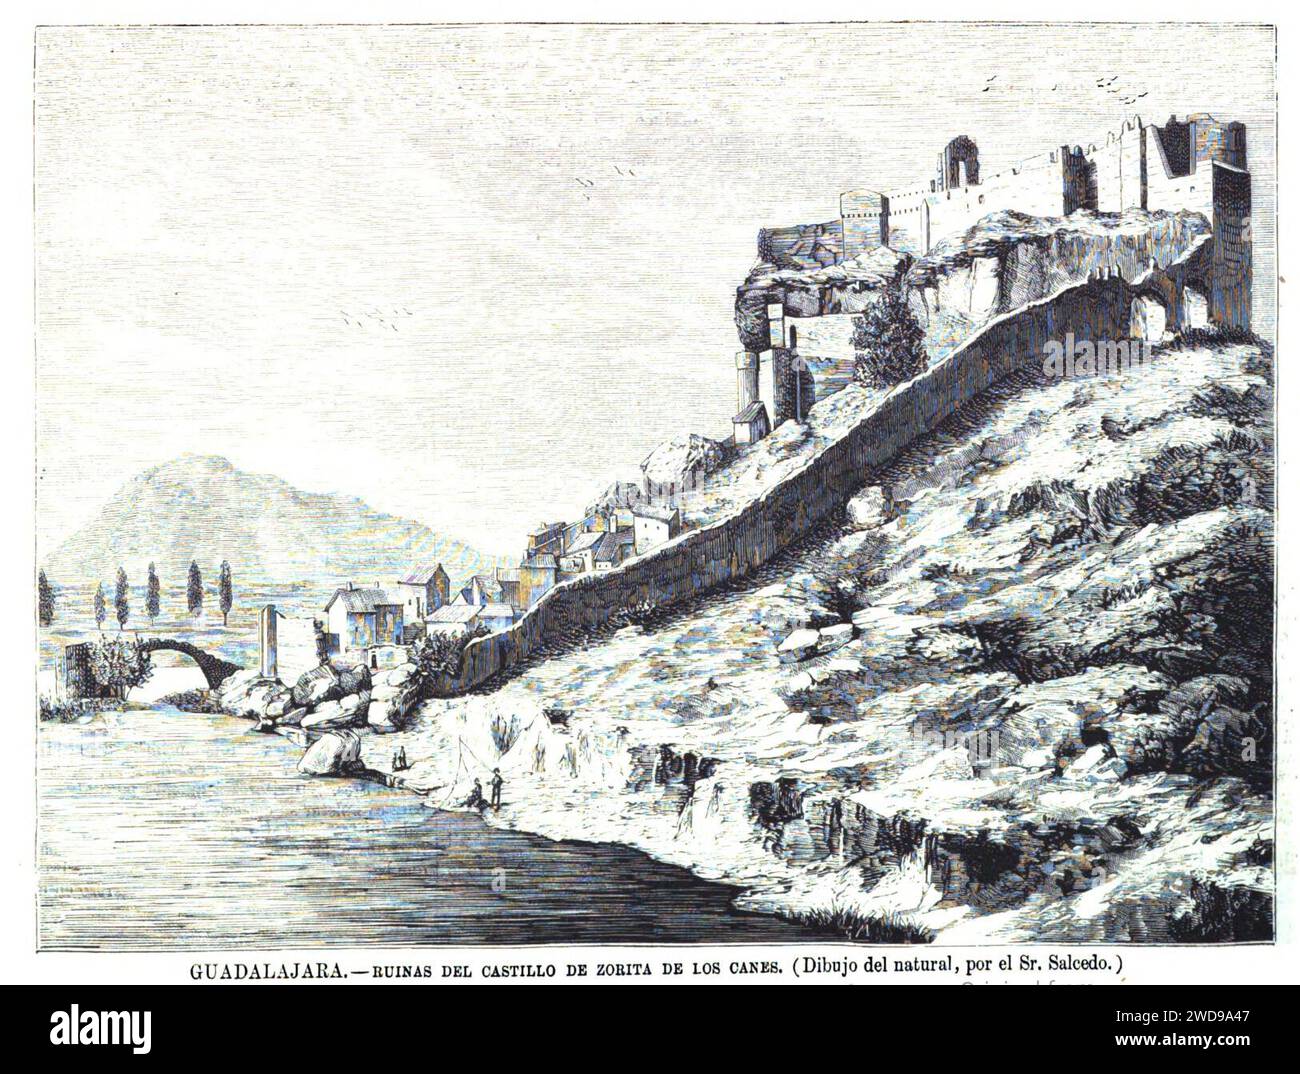 1877-06-30, La Ilustración Española y Americana, Guadalajara, Ruinas del castillo de Zorita de los Canes. Stock Photo